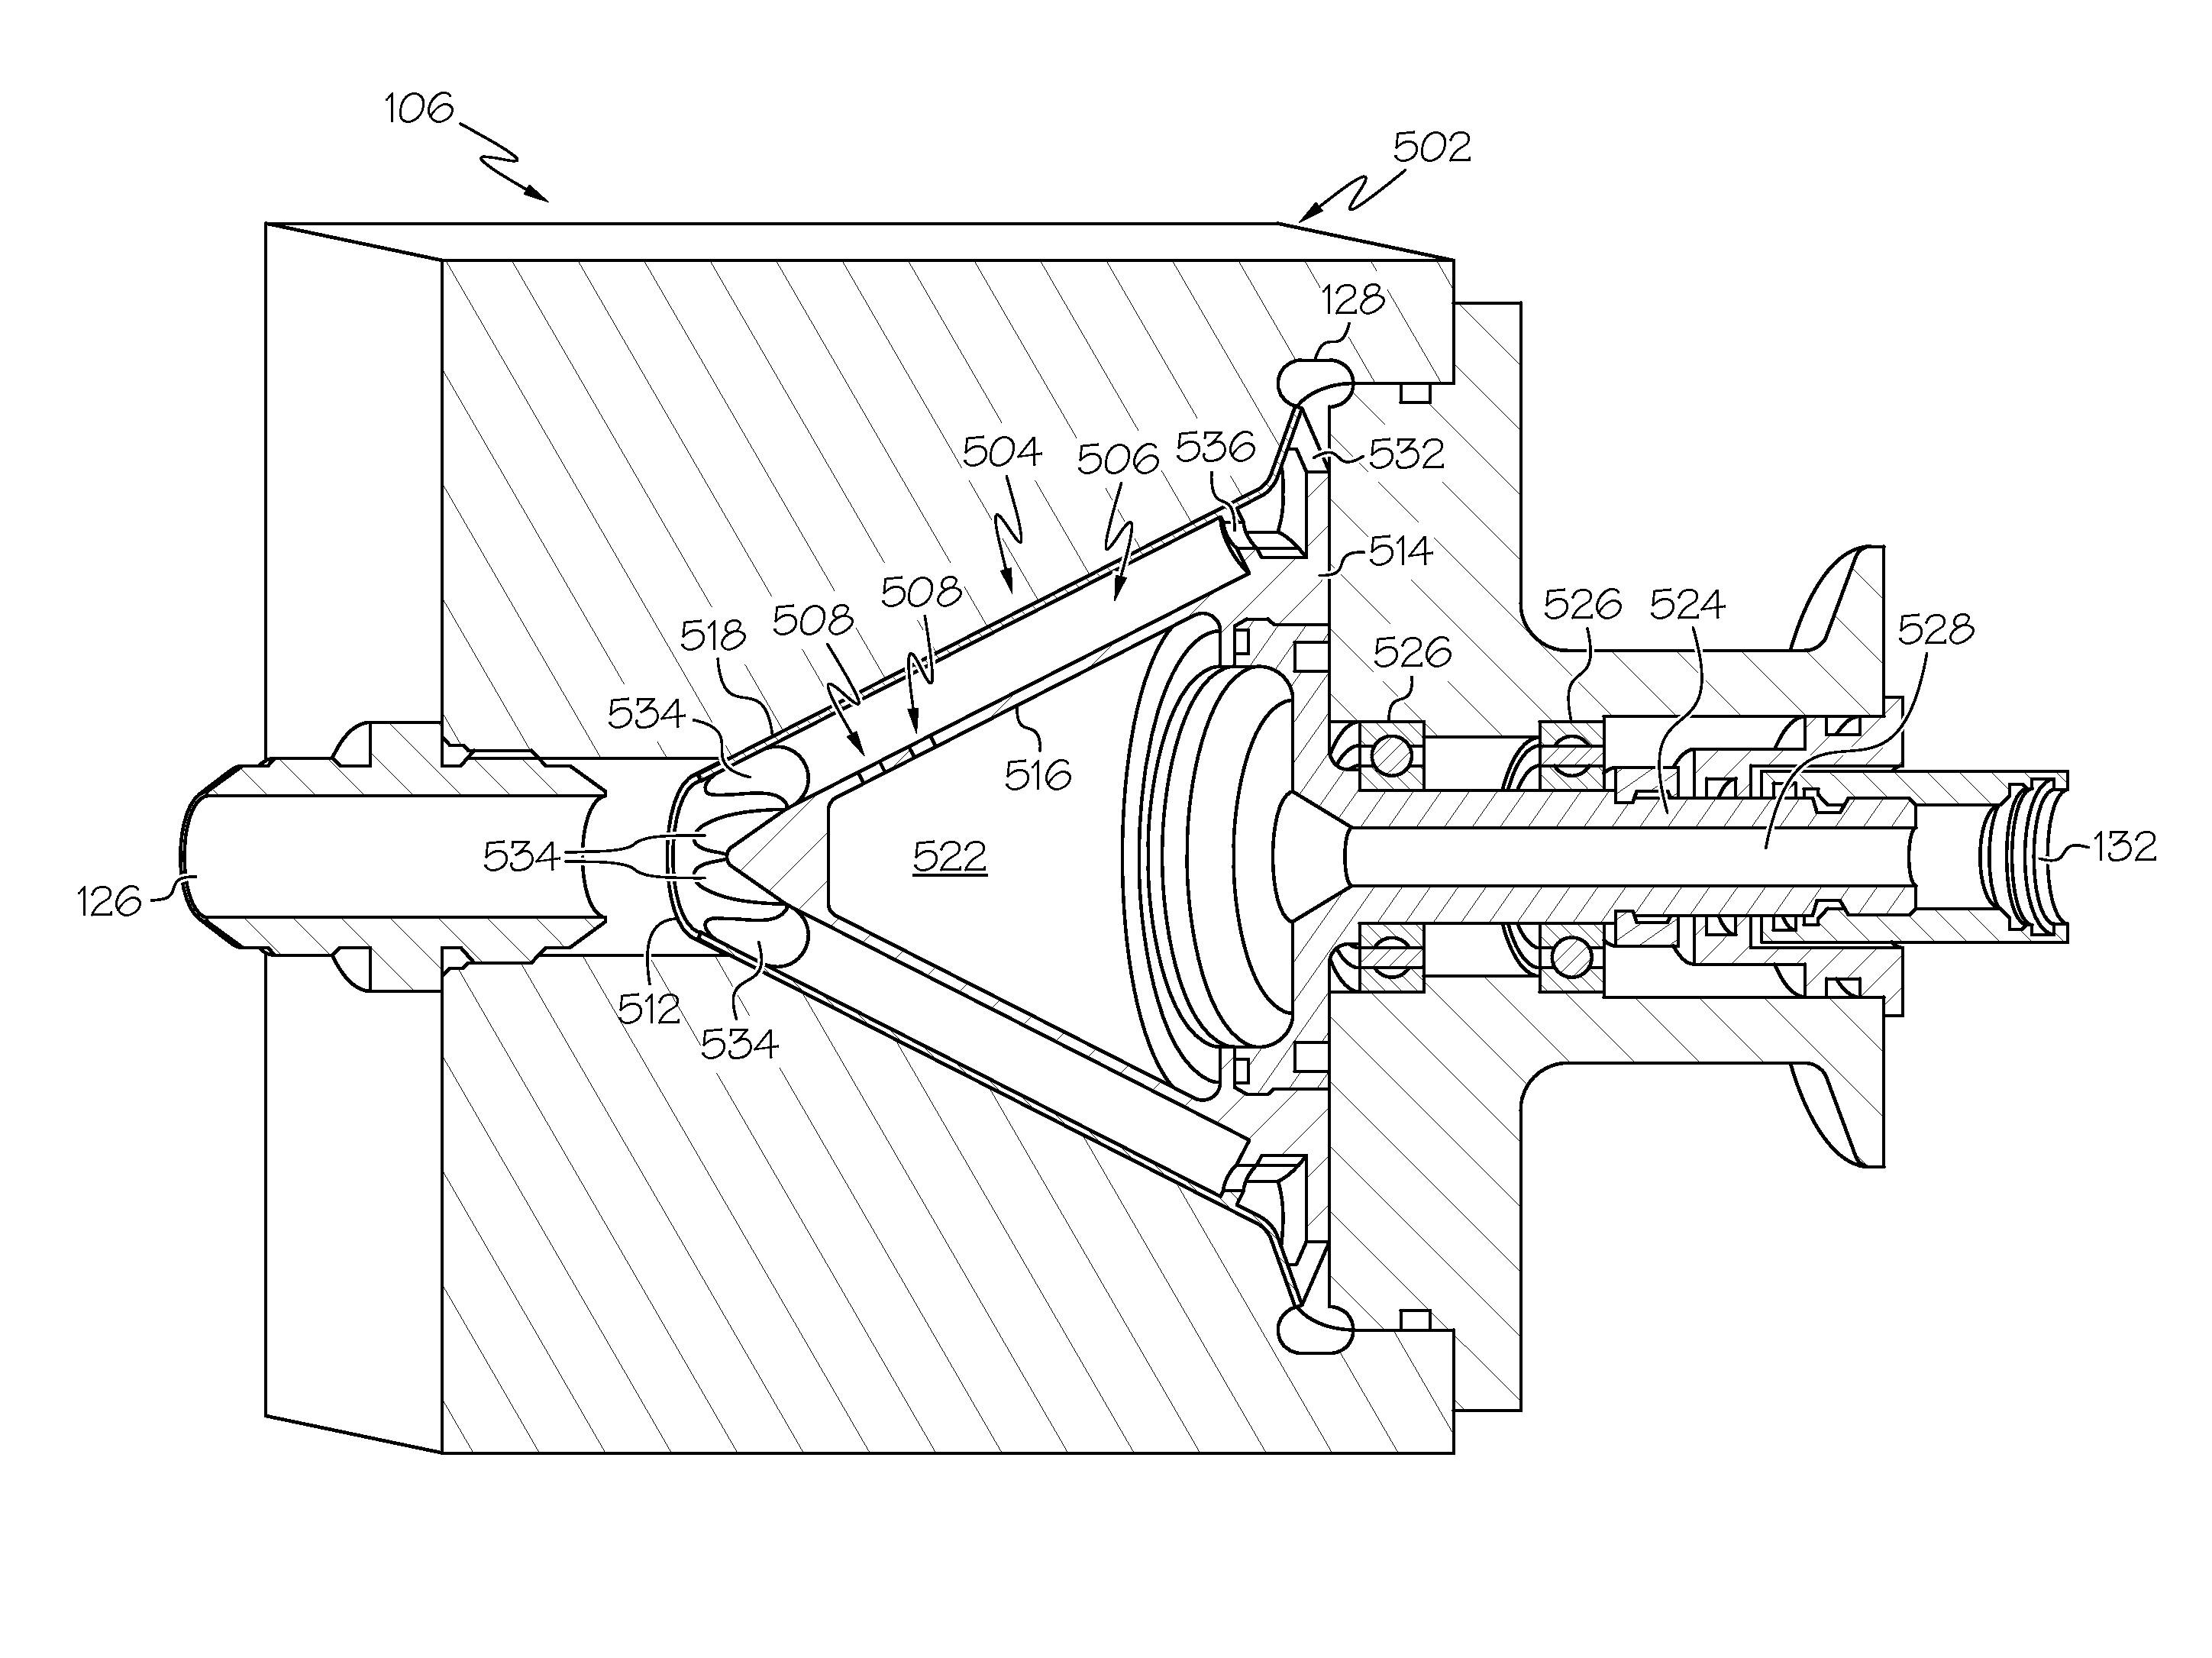 In-line continuous flow liquid-gas separator-pump